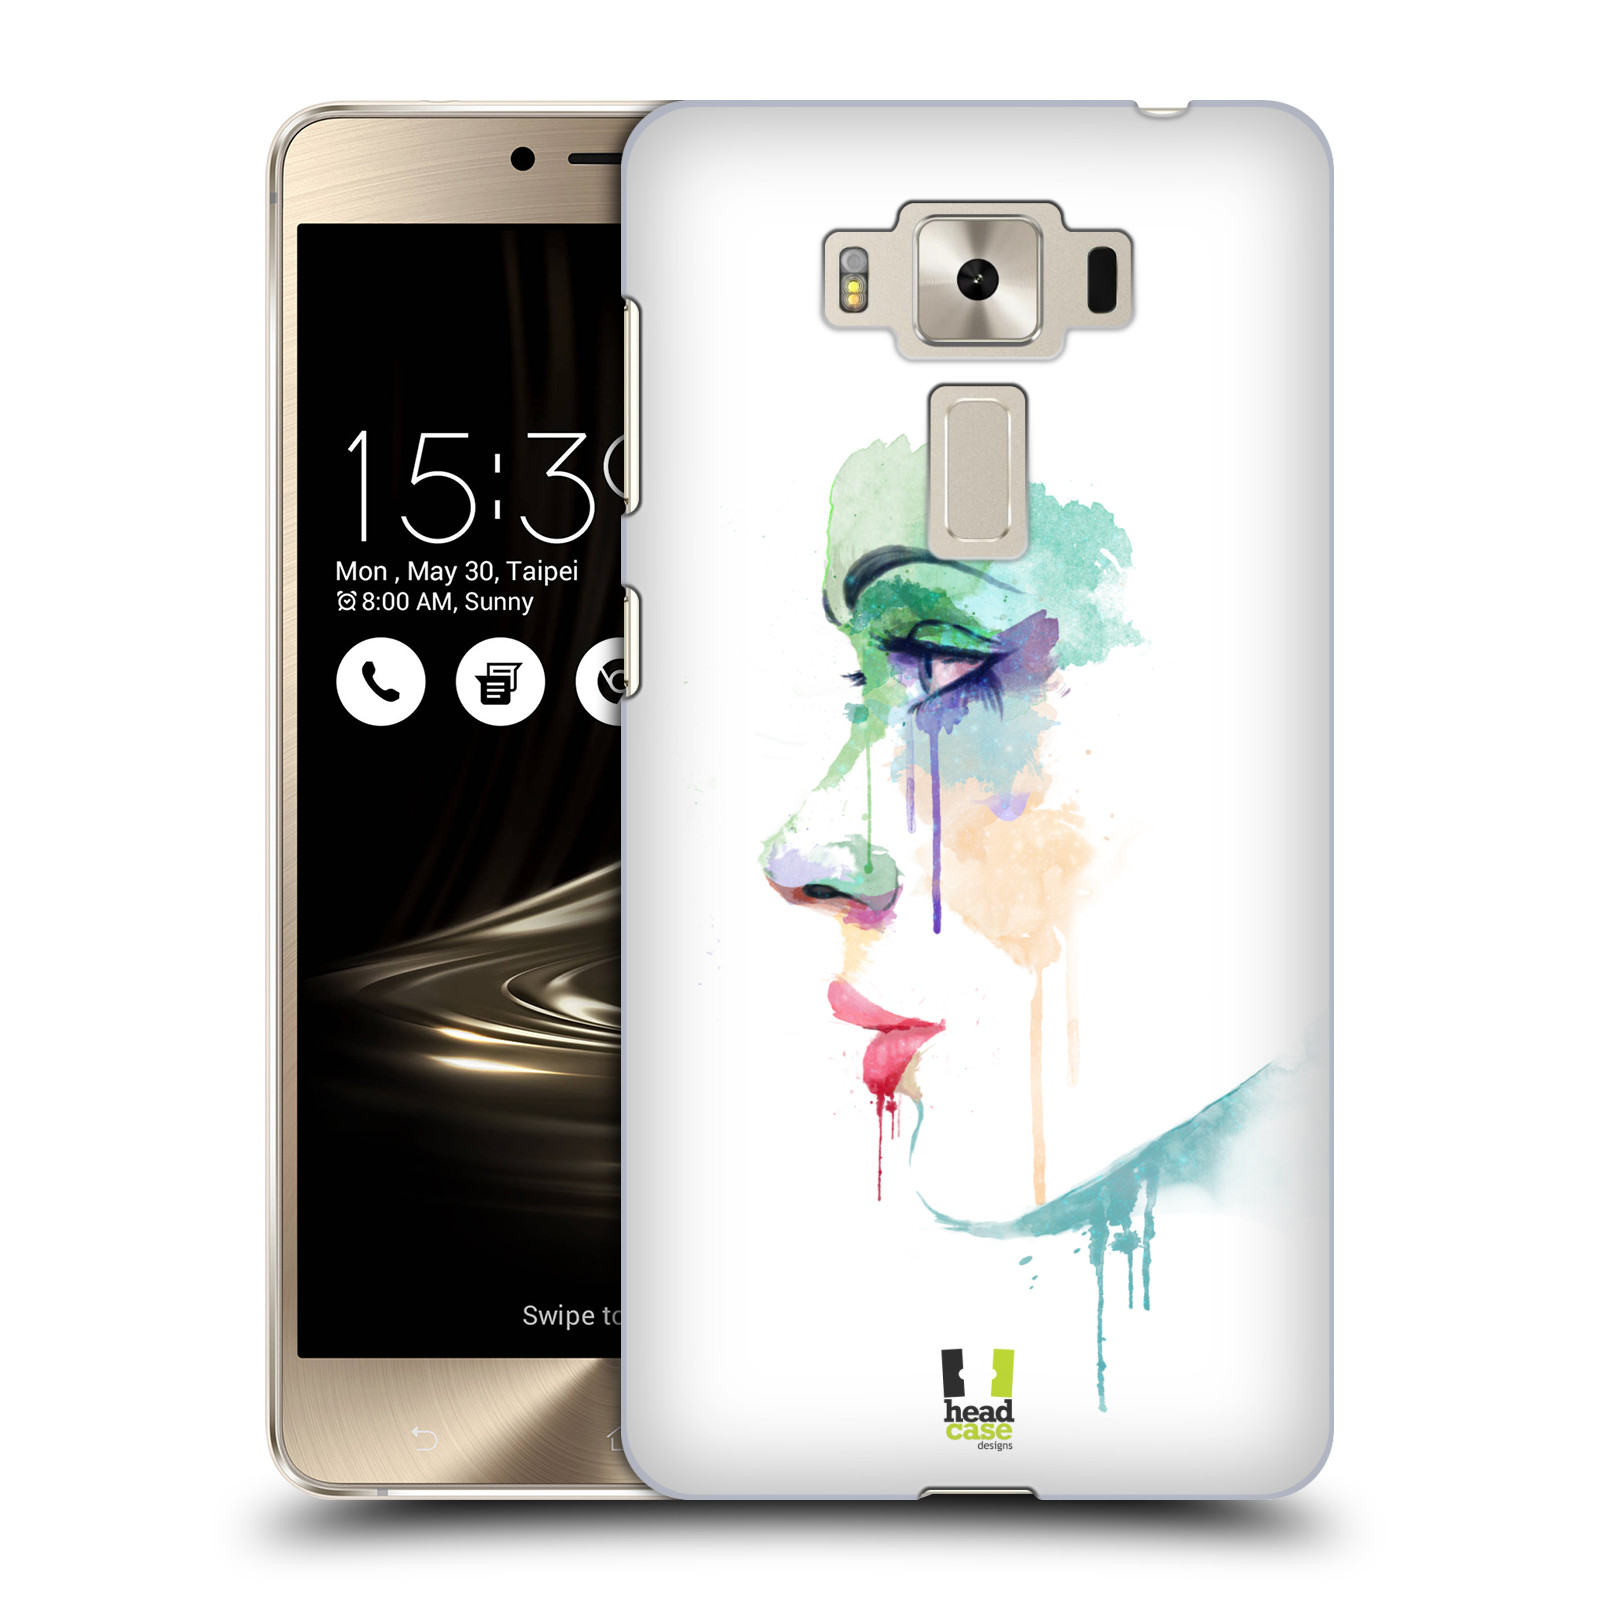 HEAD CASE plastový obal na mobil Asus Zenfone 3 DELUXE ZS550KL vzor Tvaře vodní barvy PROFIL